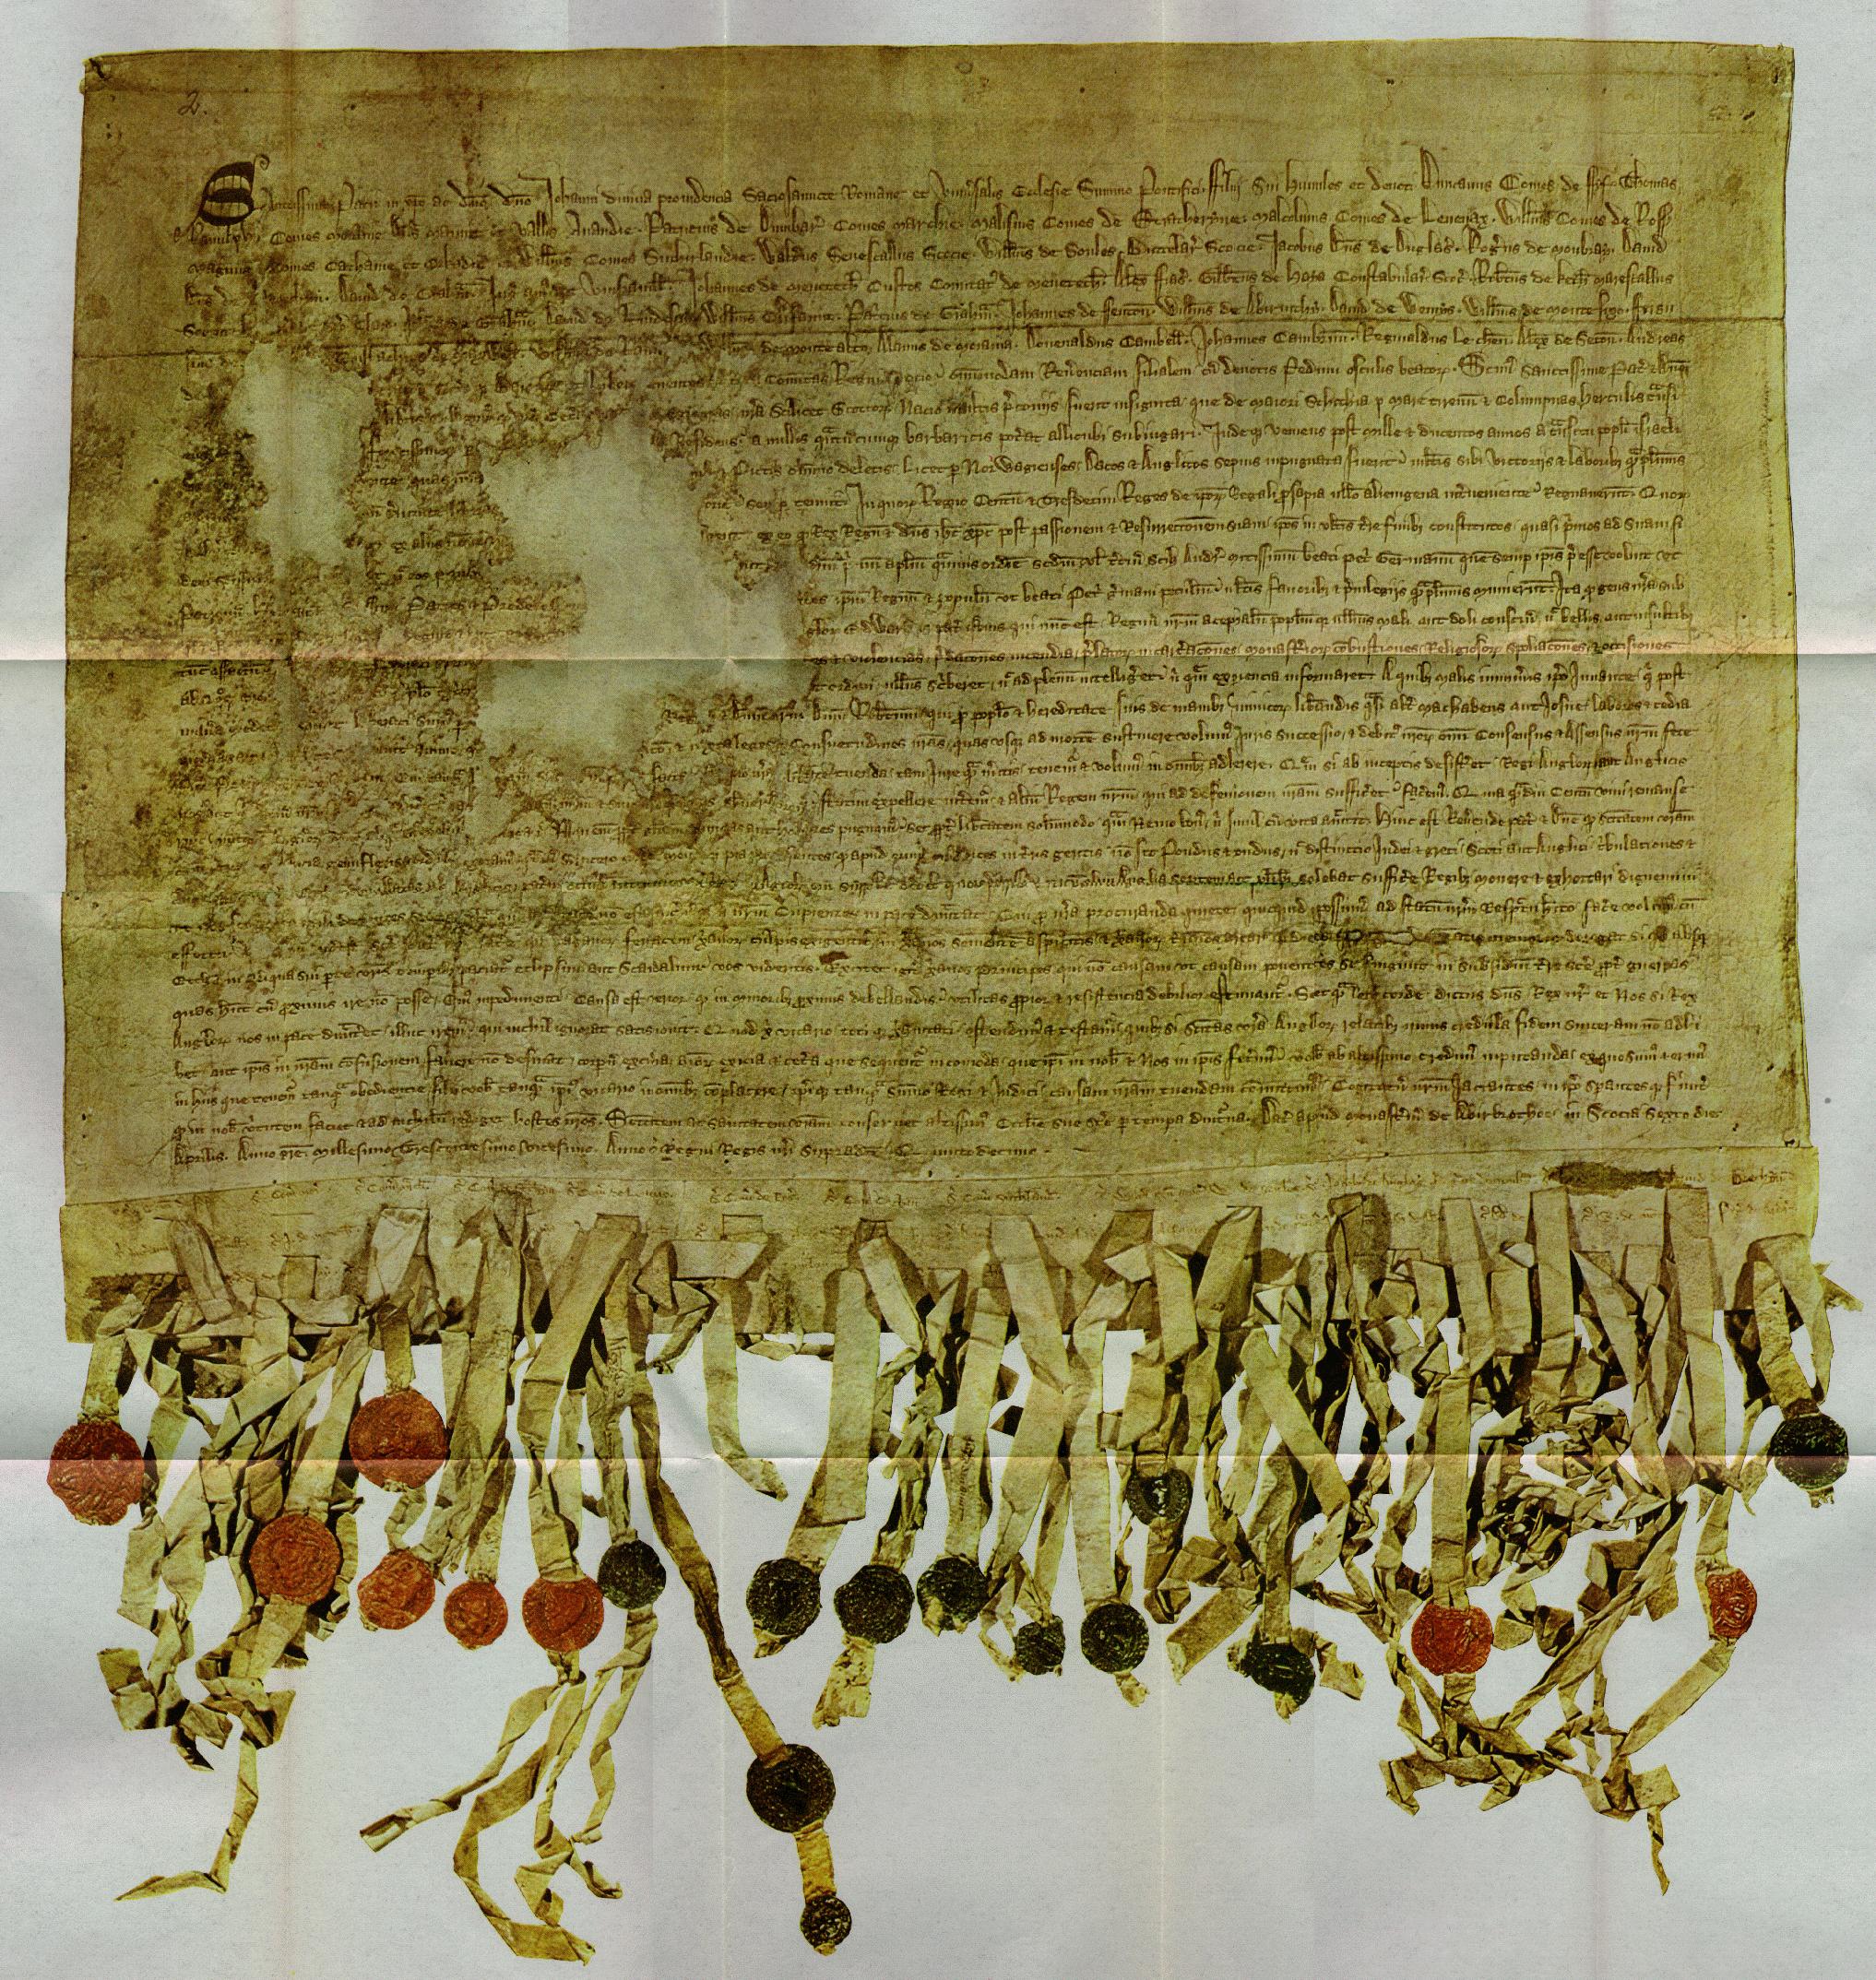 Declaration of Abroath